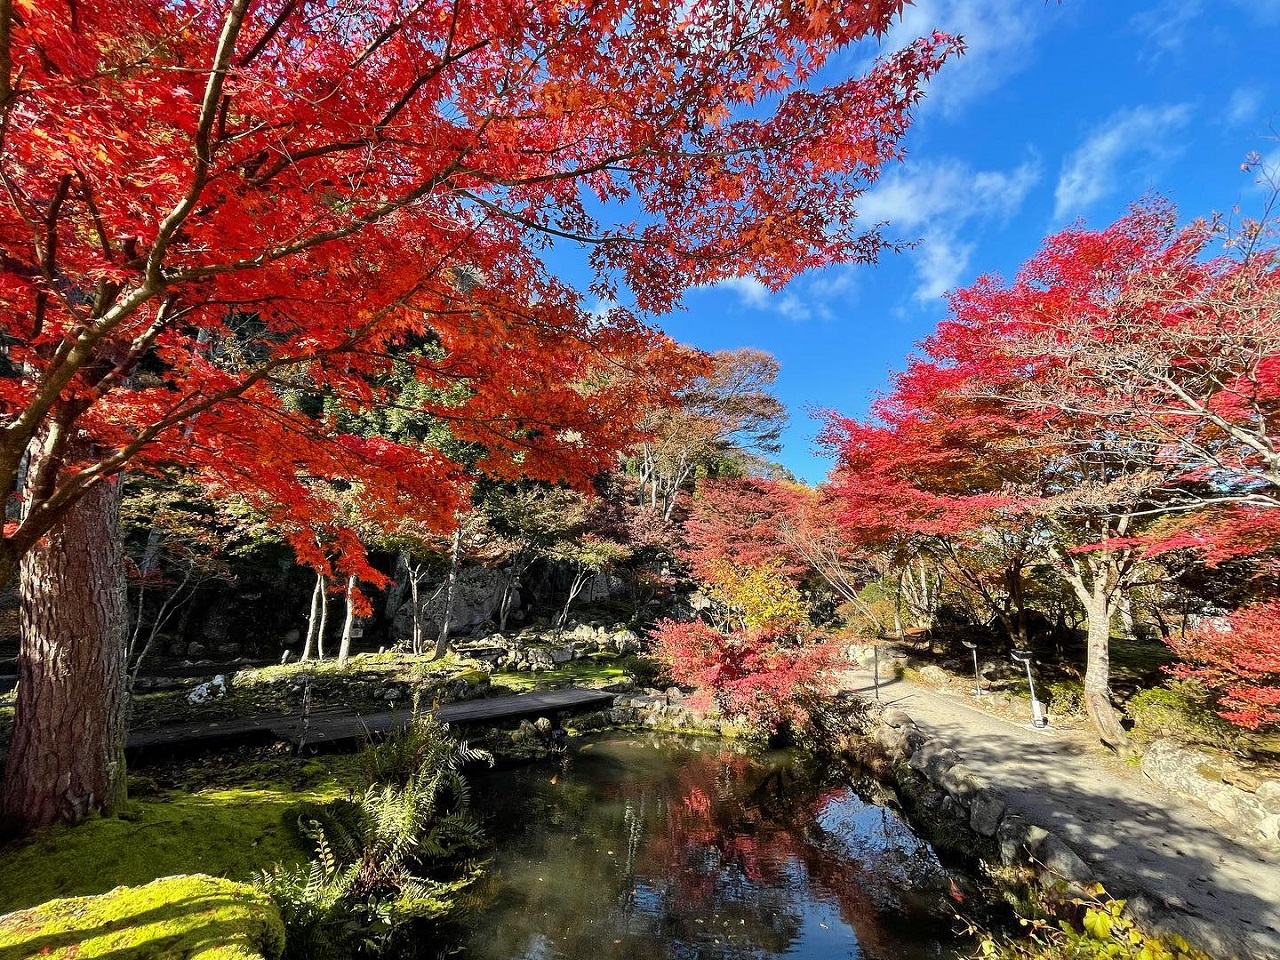 สวนธรรมชาติเท็นชุคาคุ สวน ใบไม้แดง ใบไม้เปลี่ยนสี โทโฮคุ มิยากิ 